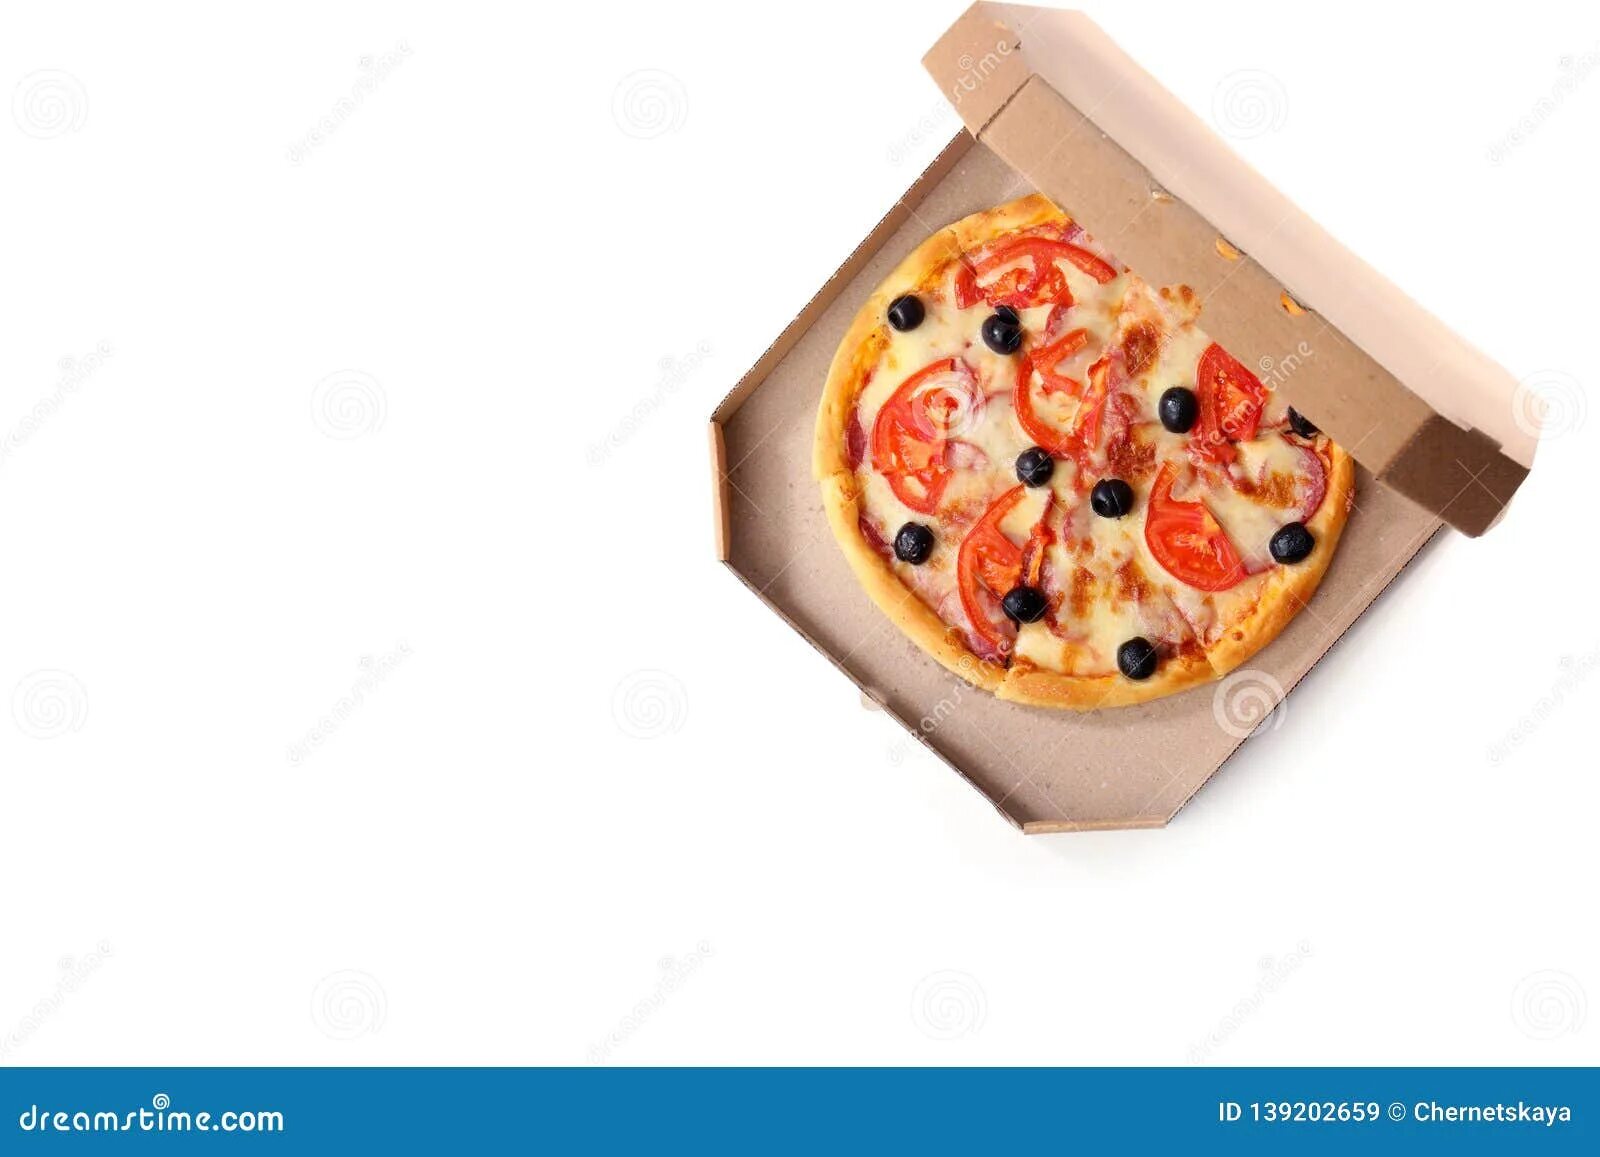 Коробки для пиццы. Коробка пиццы сверху. Коробка пиццы вид сверху. Пицца в коробке сверху. Почему пицца круглая а коробка